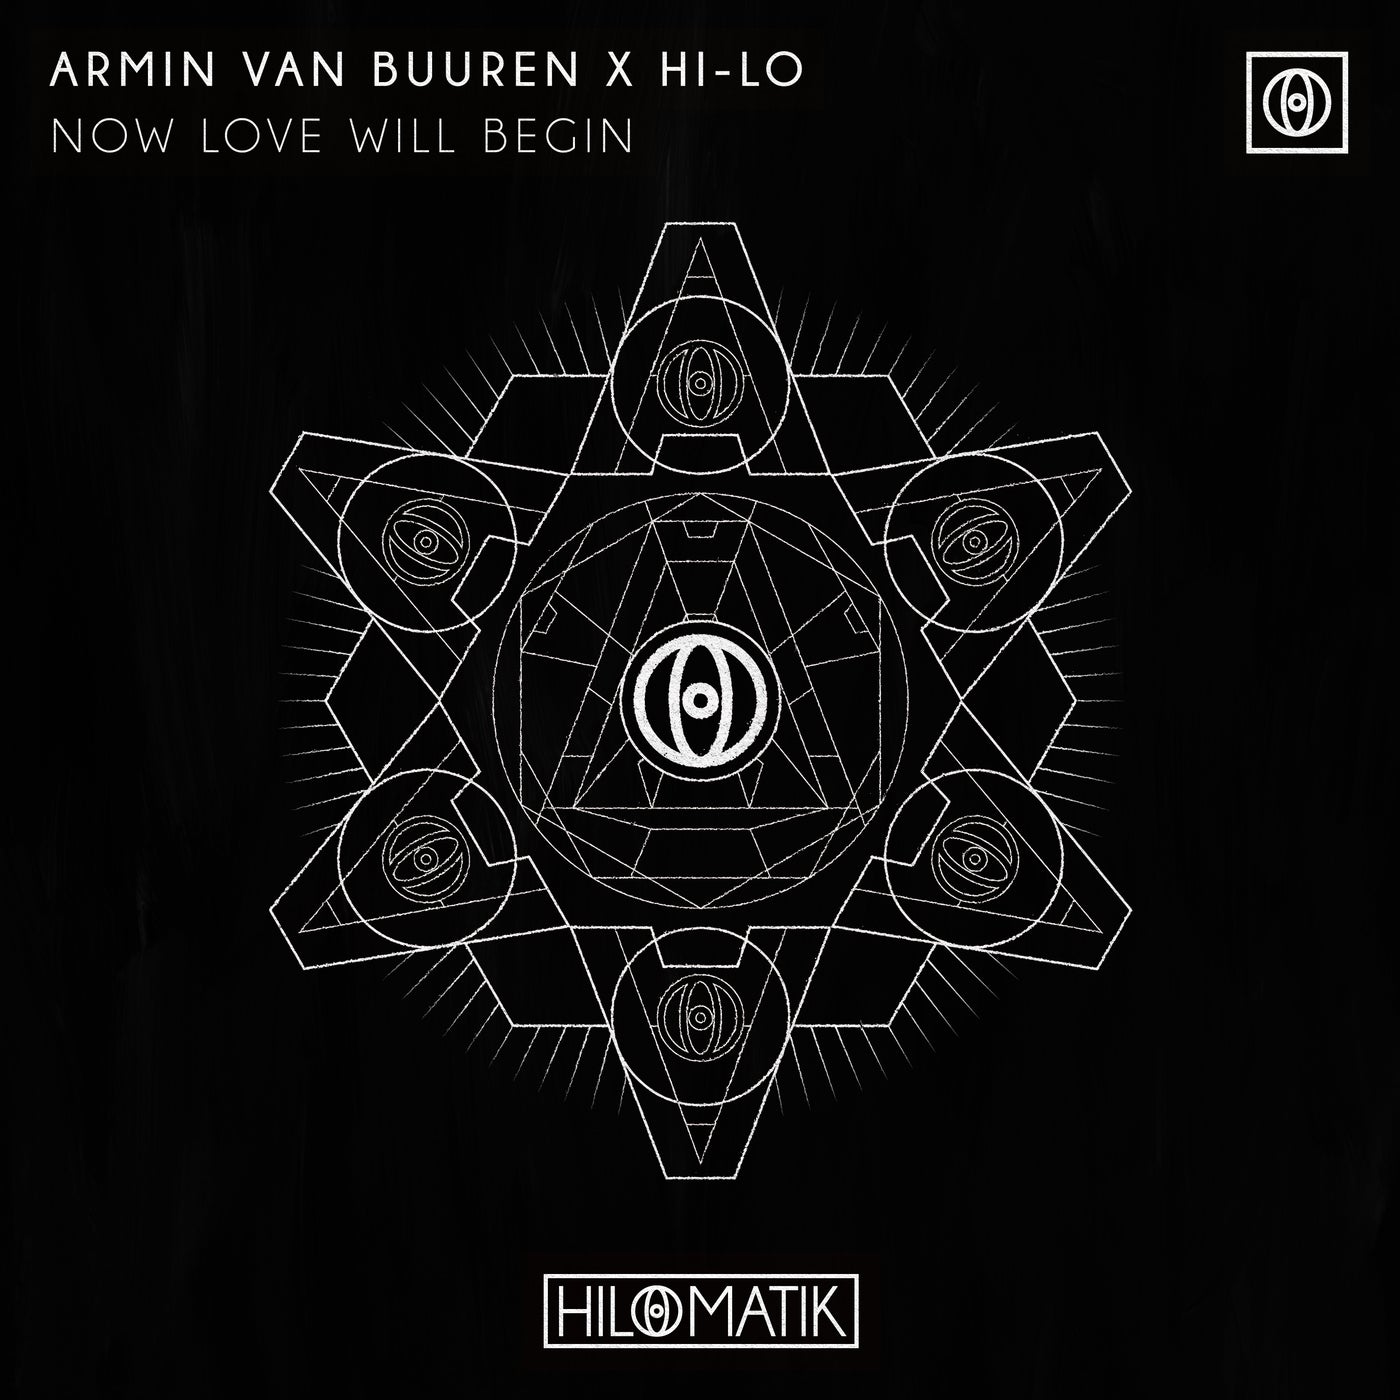 image cover: Armin van Buuren, HI-LO - Now Love Will Begin (Extended Mix) on HILOMATIK